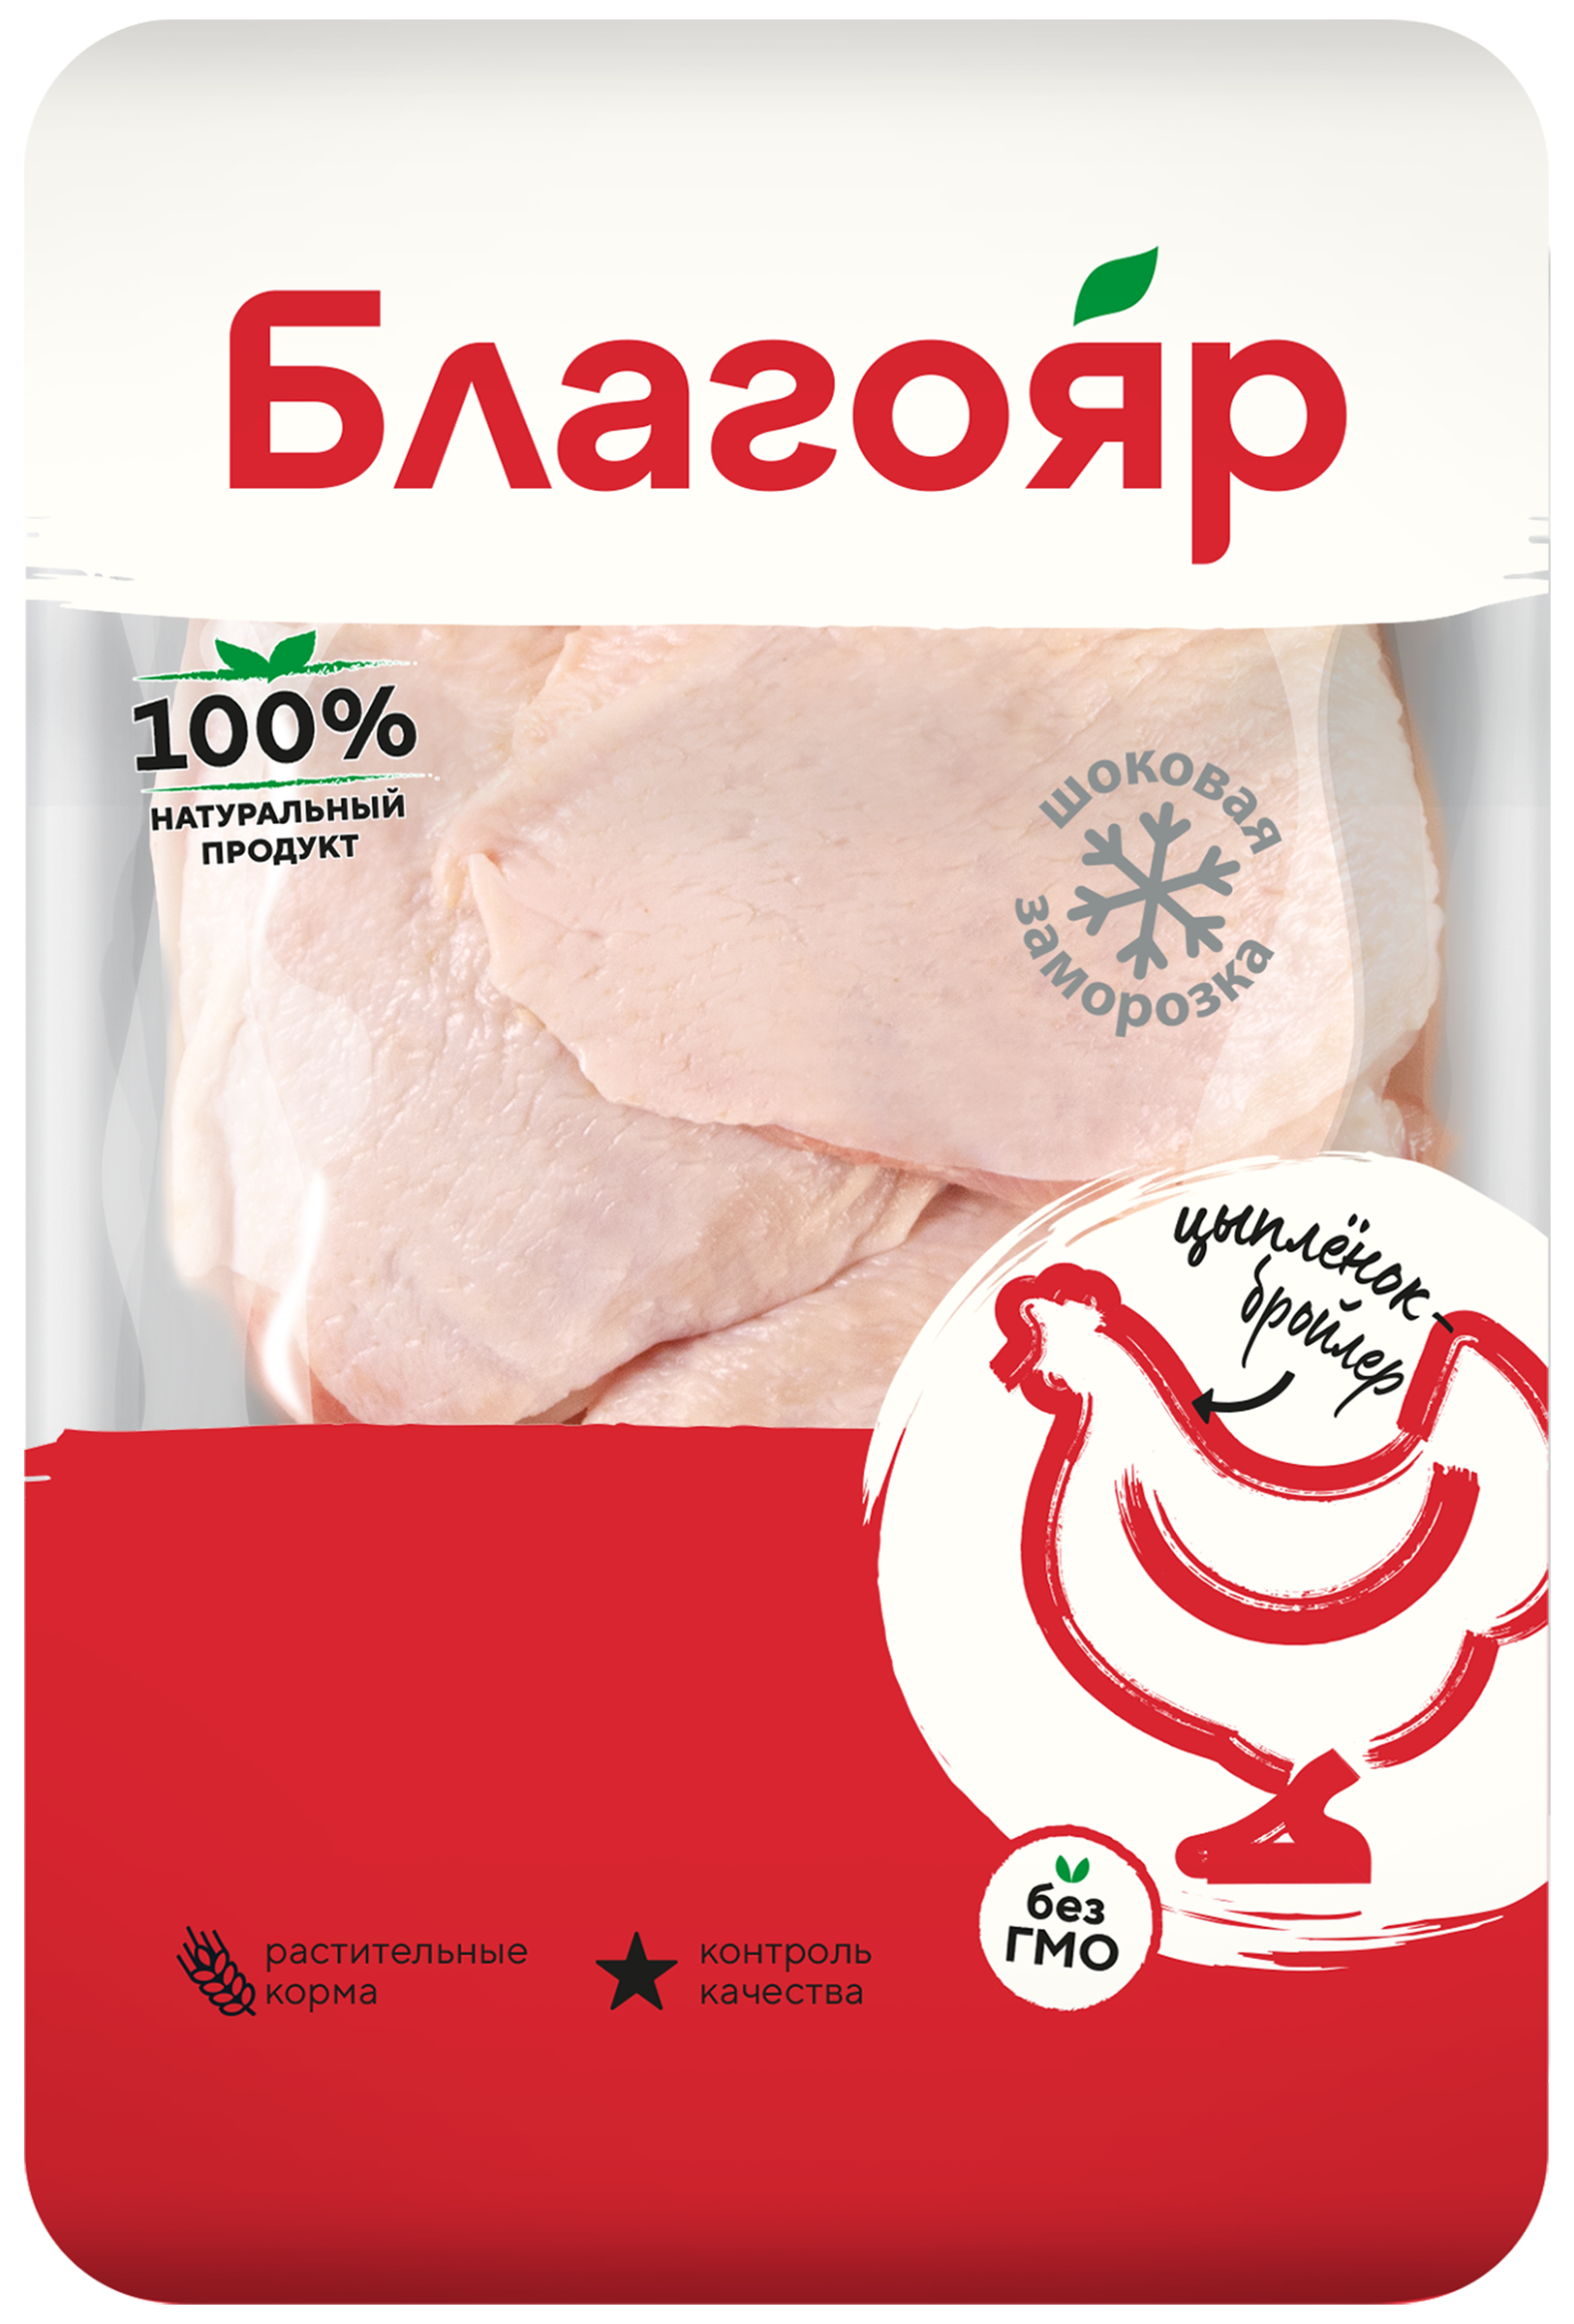 Бедро цыпленка-бройлера Благояр замороженное 1 кг